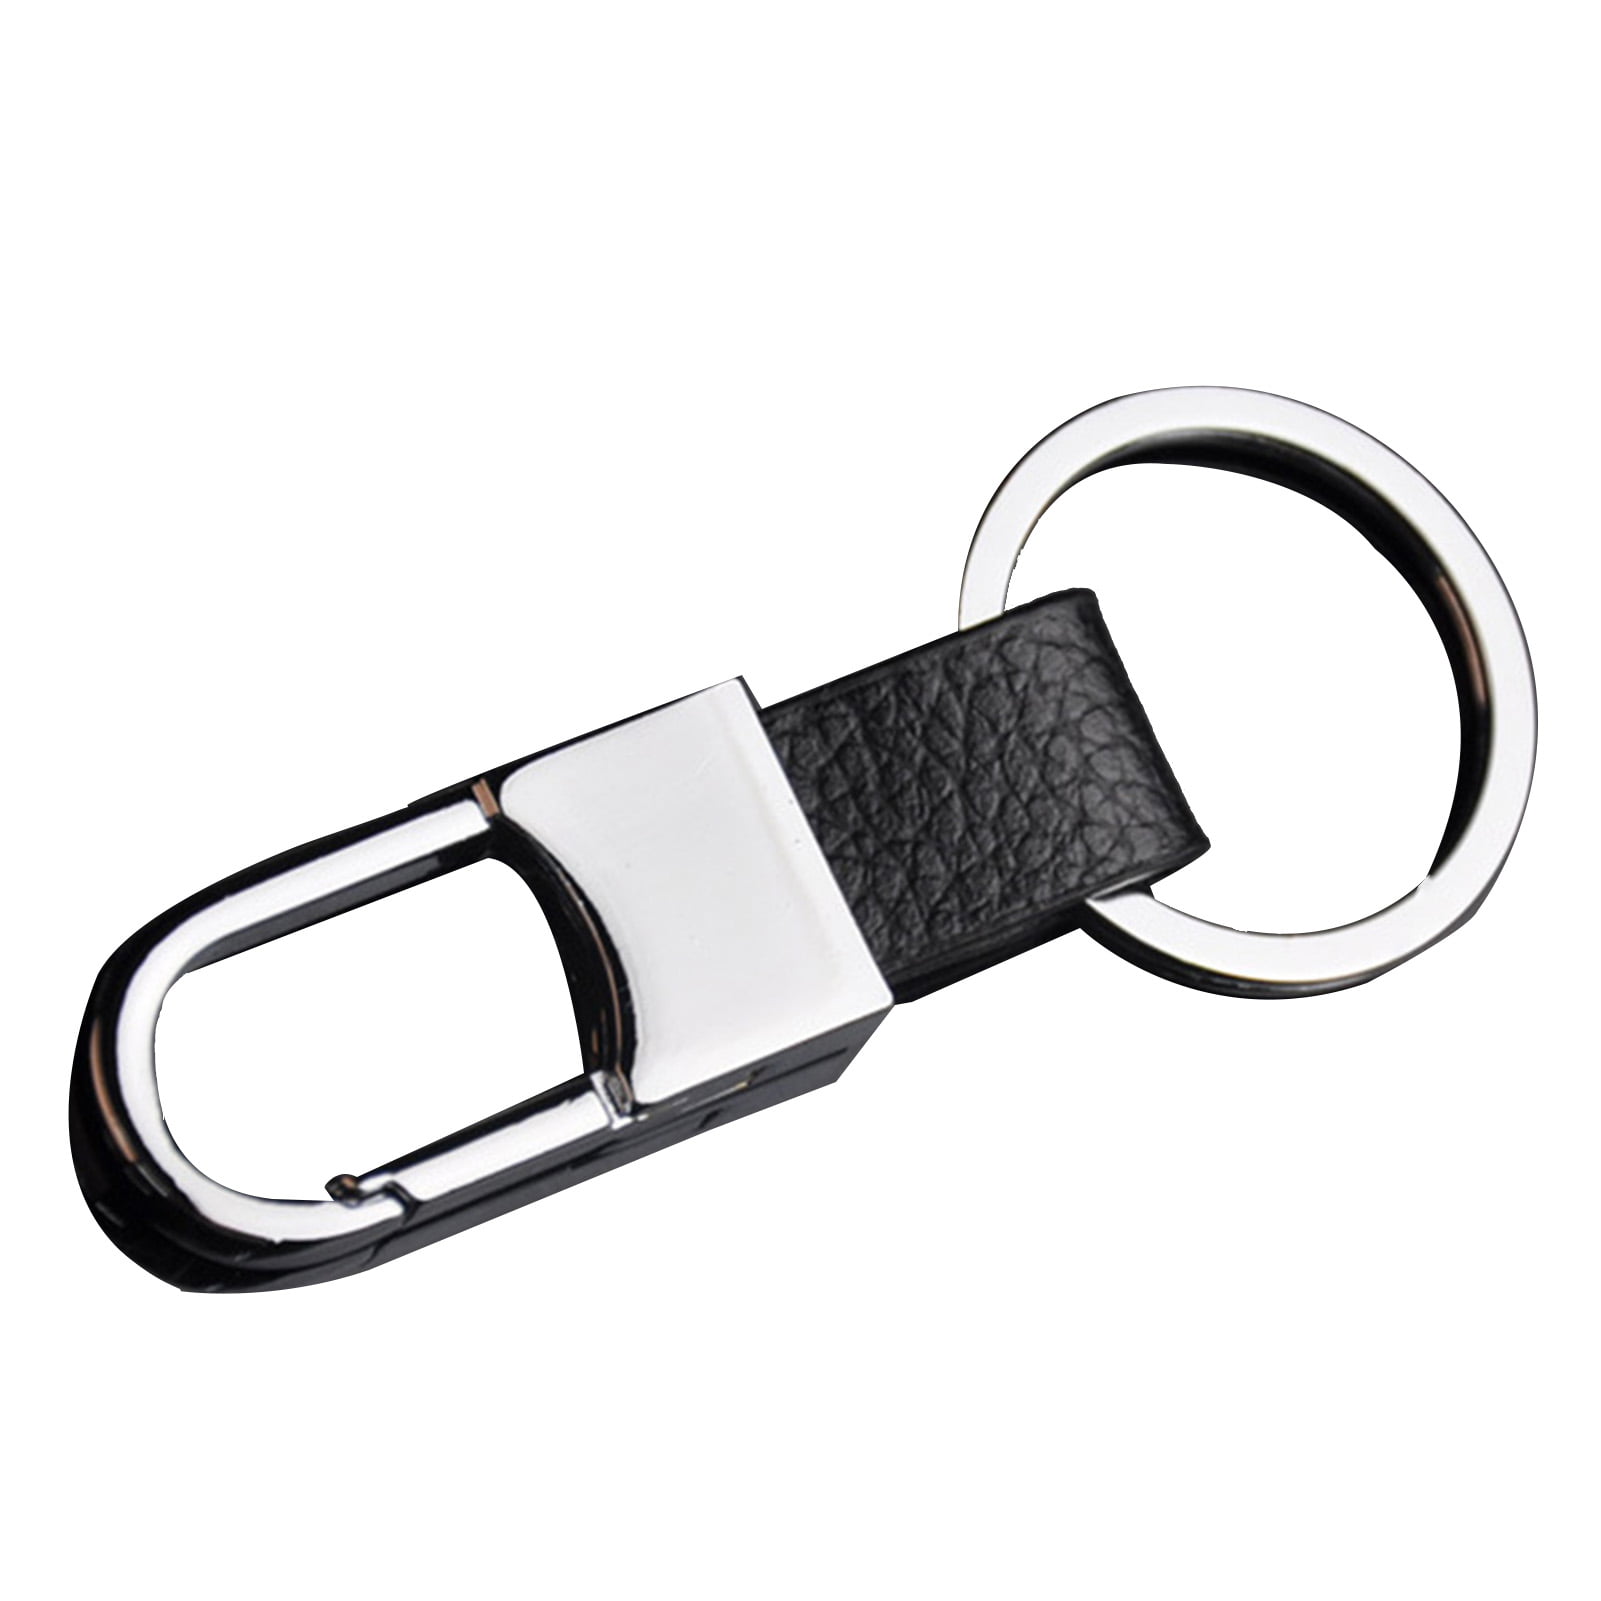 Leather Strap keychain Keyring Key Chain Key Fob Key Ring Key Chain Zinc Alloy 